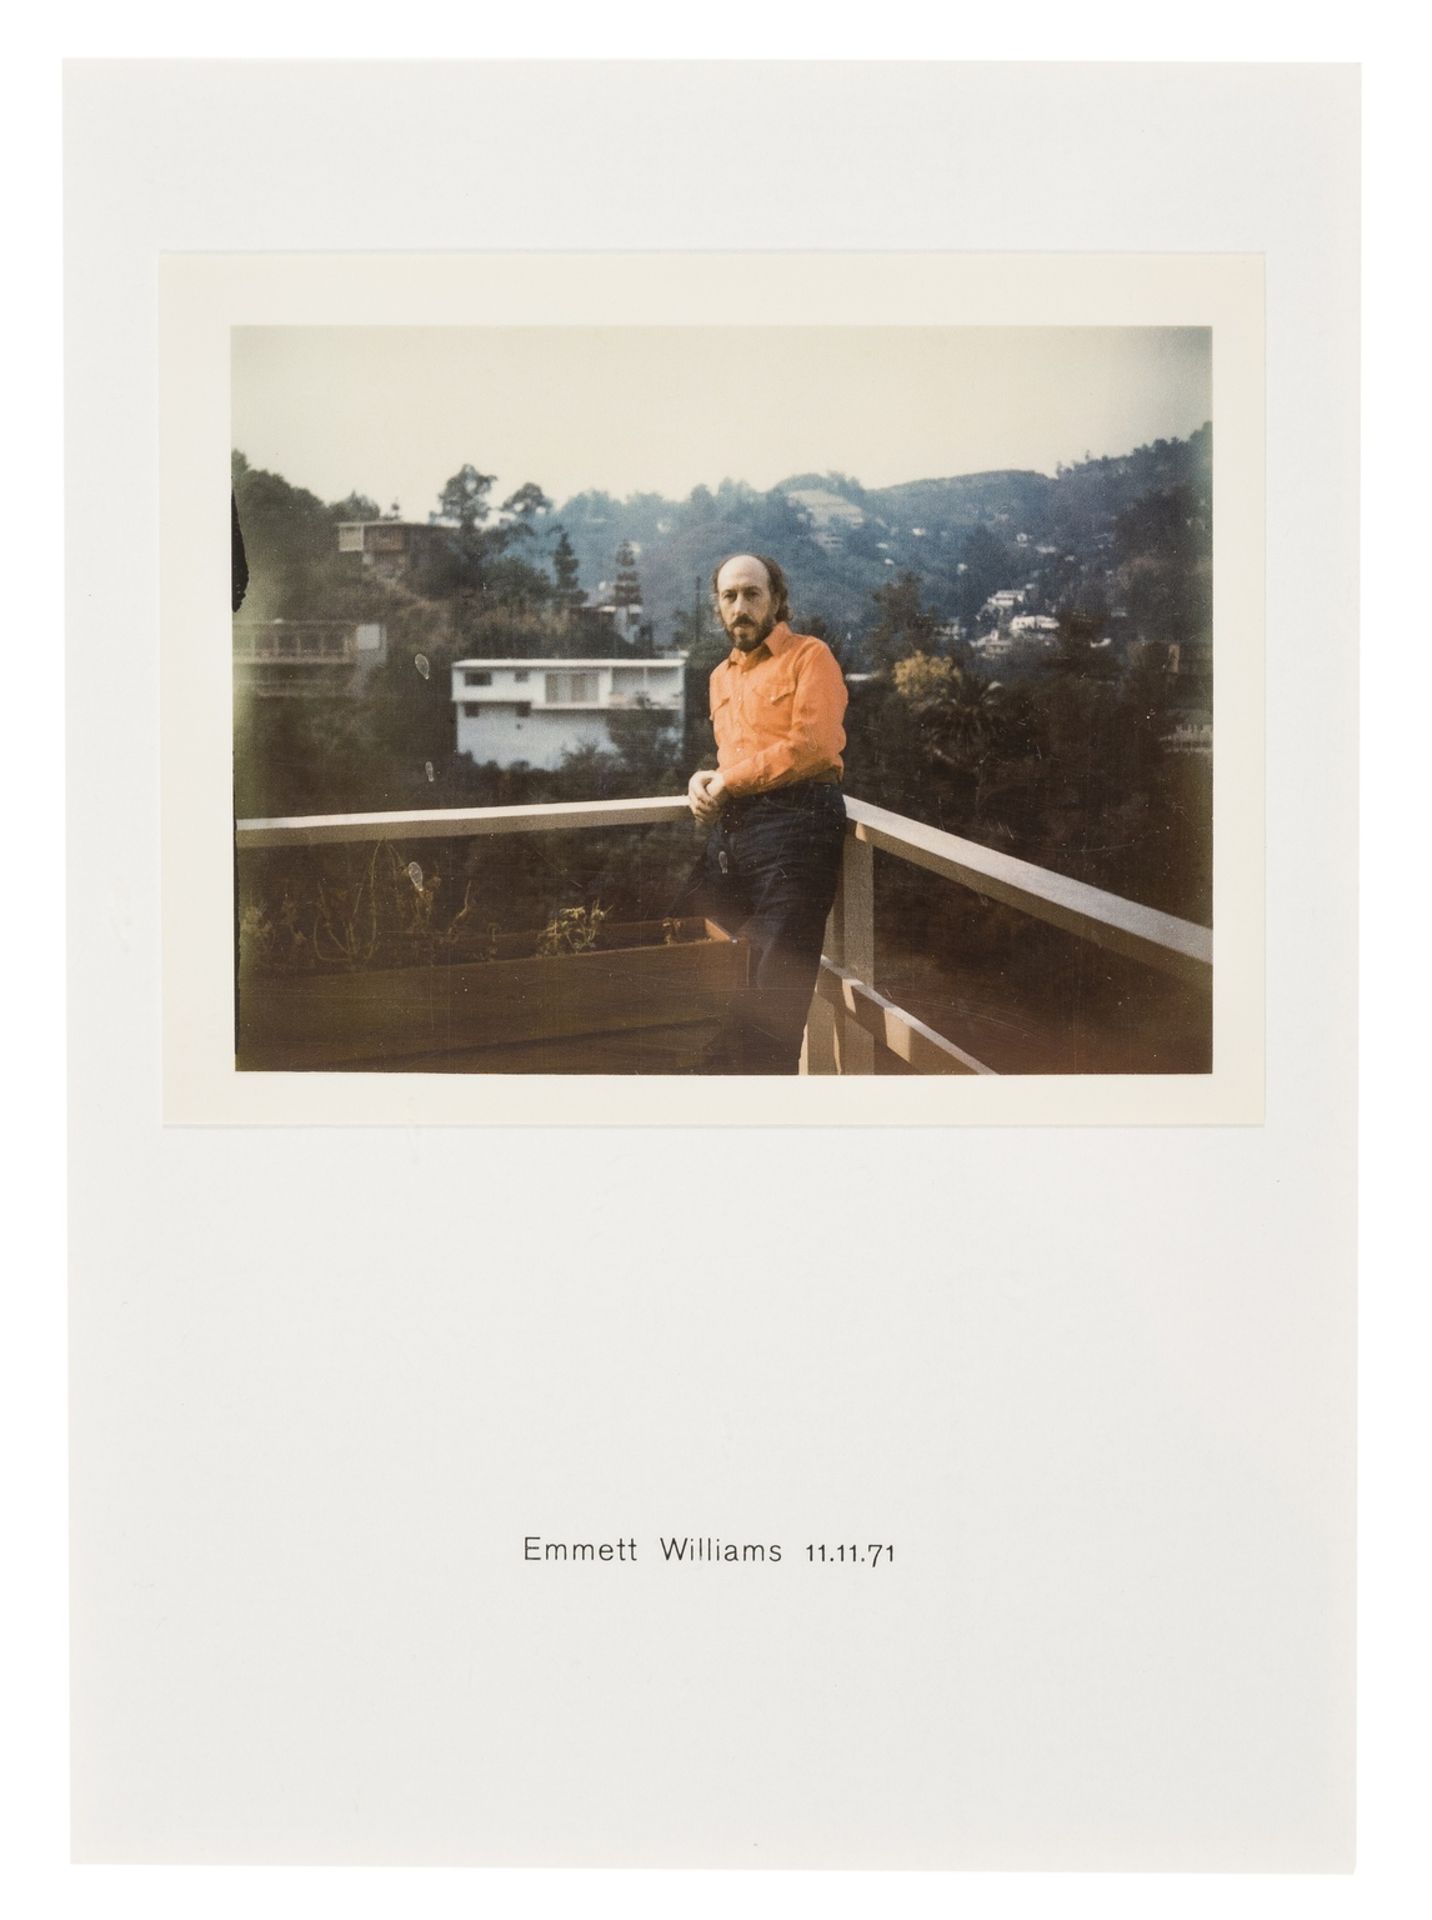 Richard Hamilton (1922-2011) Polaroid Portrait, Emmett Williams 11.11.71